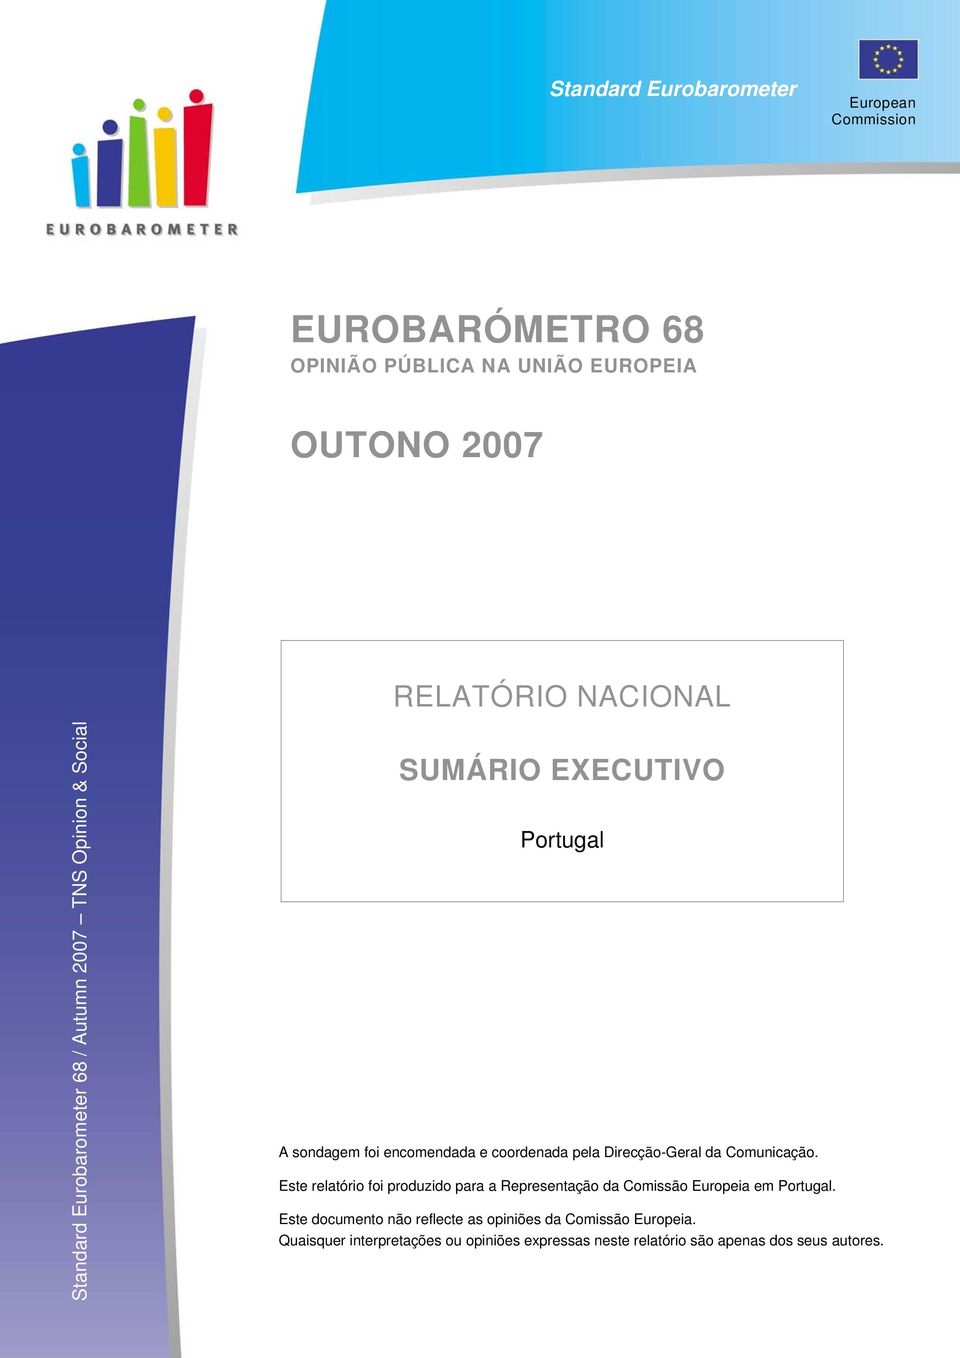 pela Direcção-Geral da Comunicação. Este relatório foi produzido para a Representação da Comissão Europeia em Portugal.